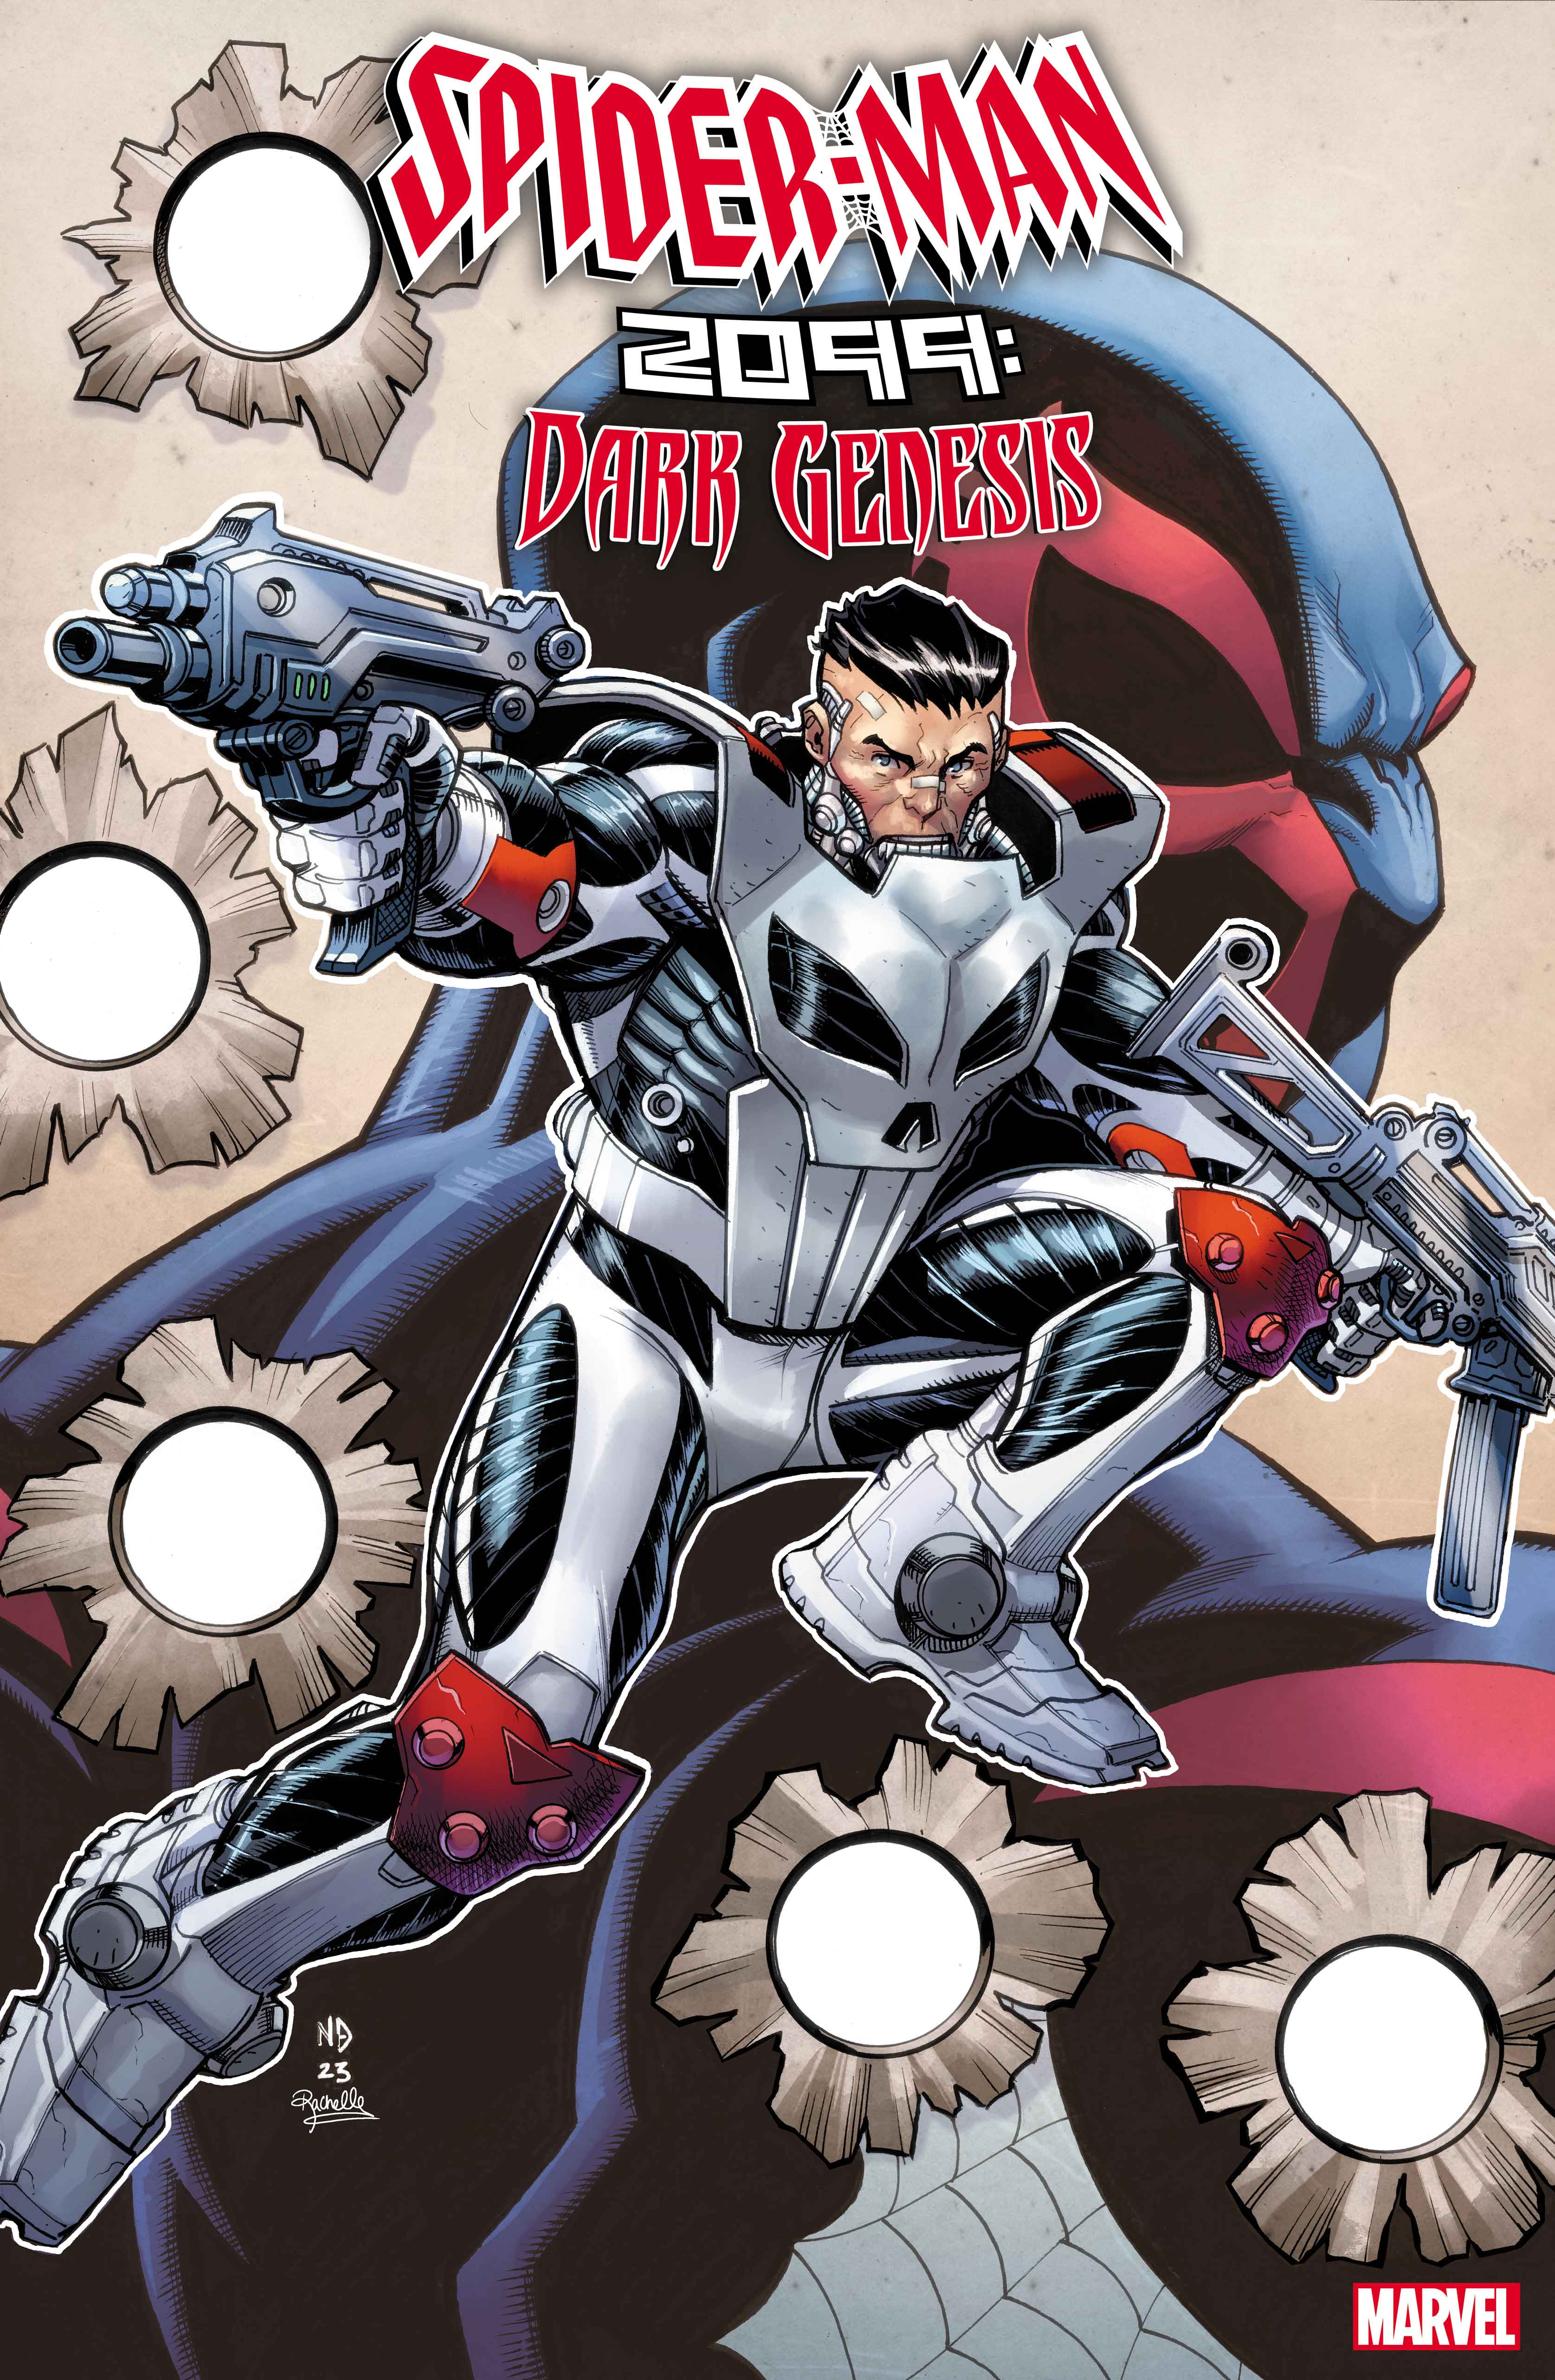 SPIDER-MAN 2099: DARK GENESIS #3 cover